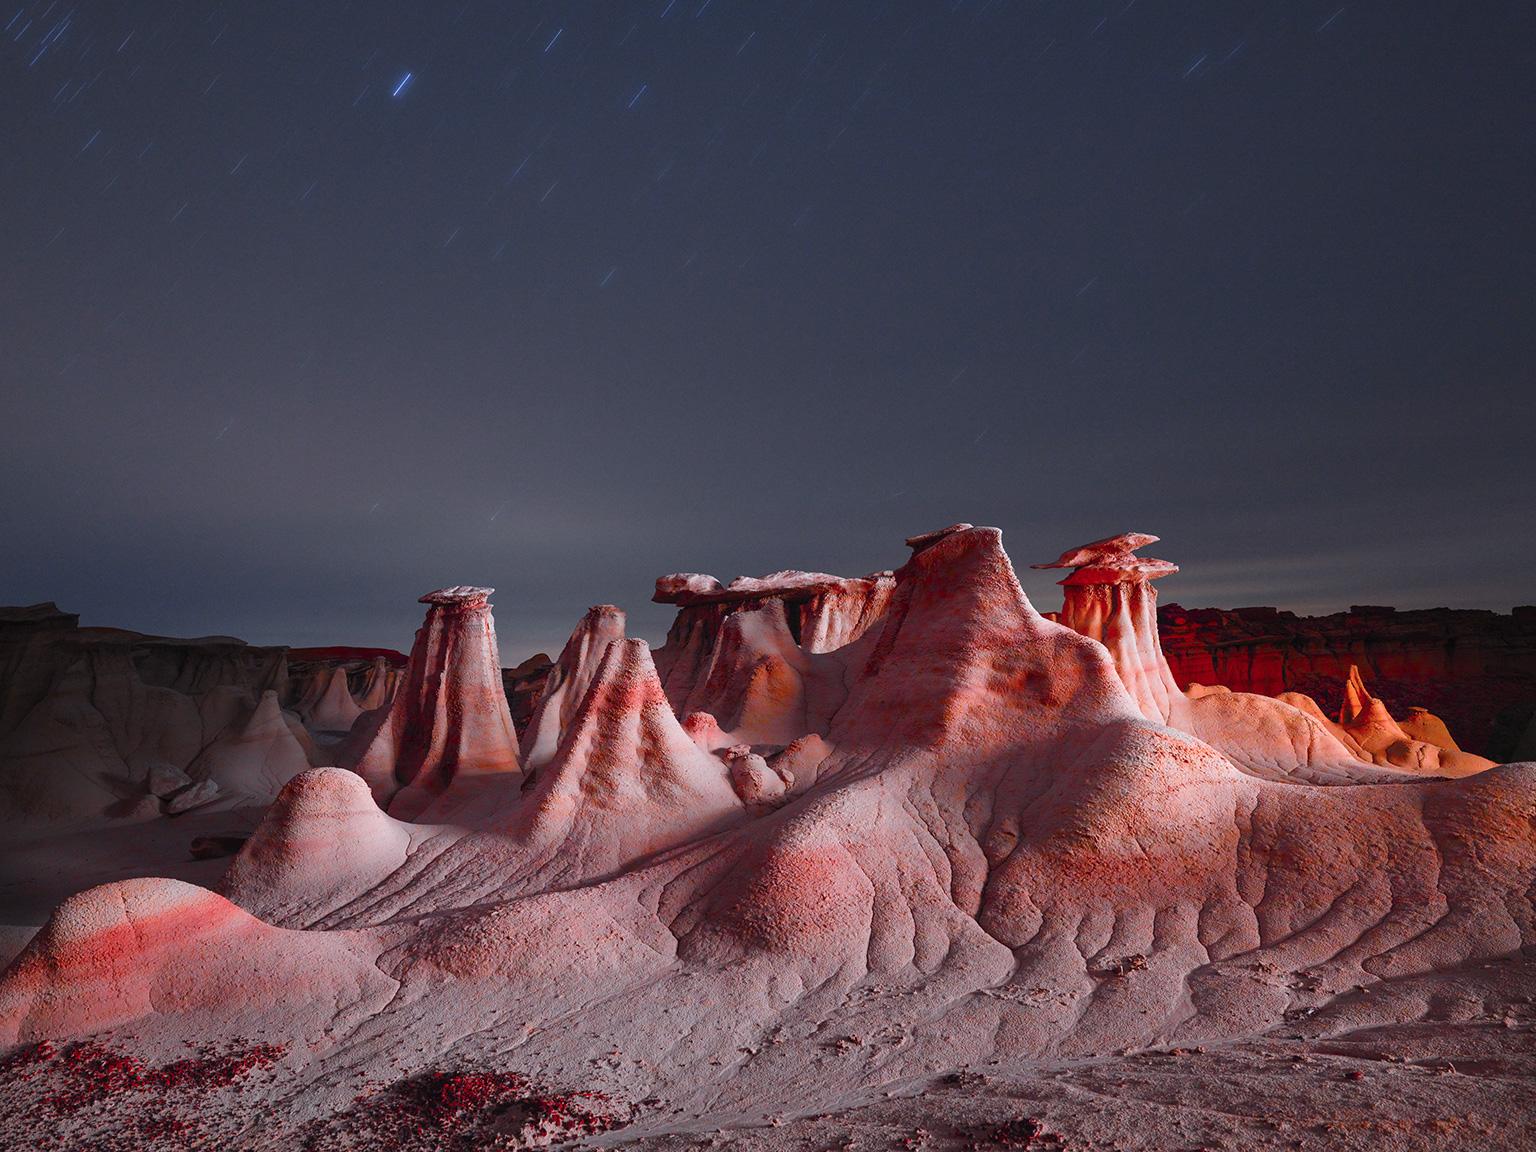 Reuben Wu Color Photograph – Lux Noctis LN3754 - Großformatige Fotografie einer beleuchteten nächtlichen Landschaft